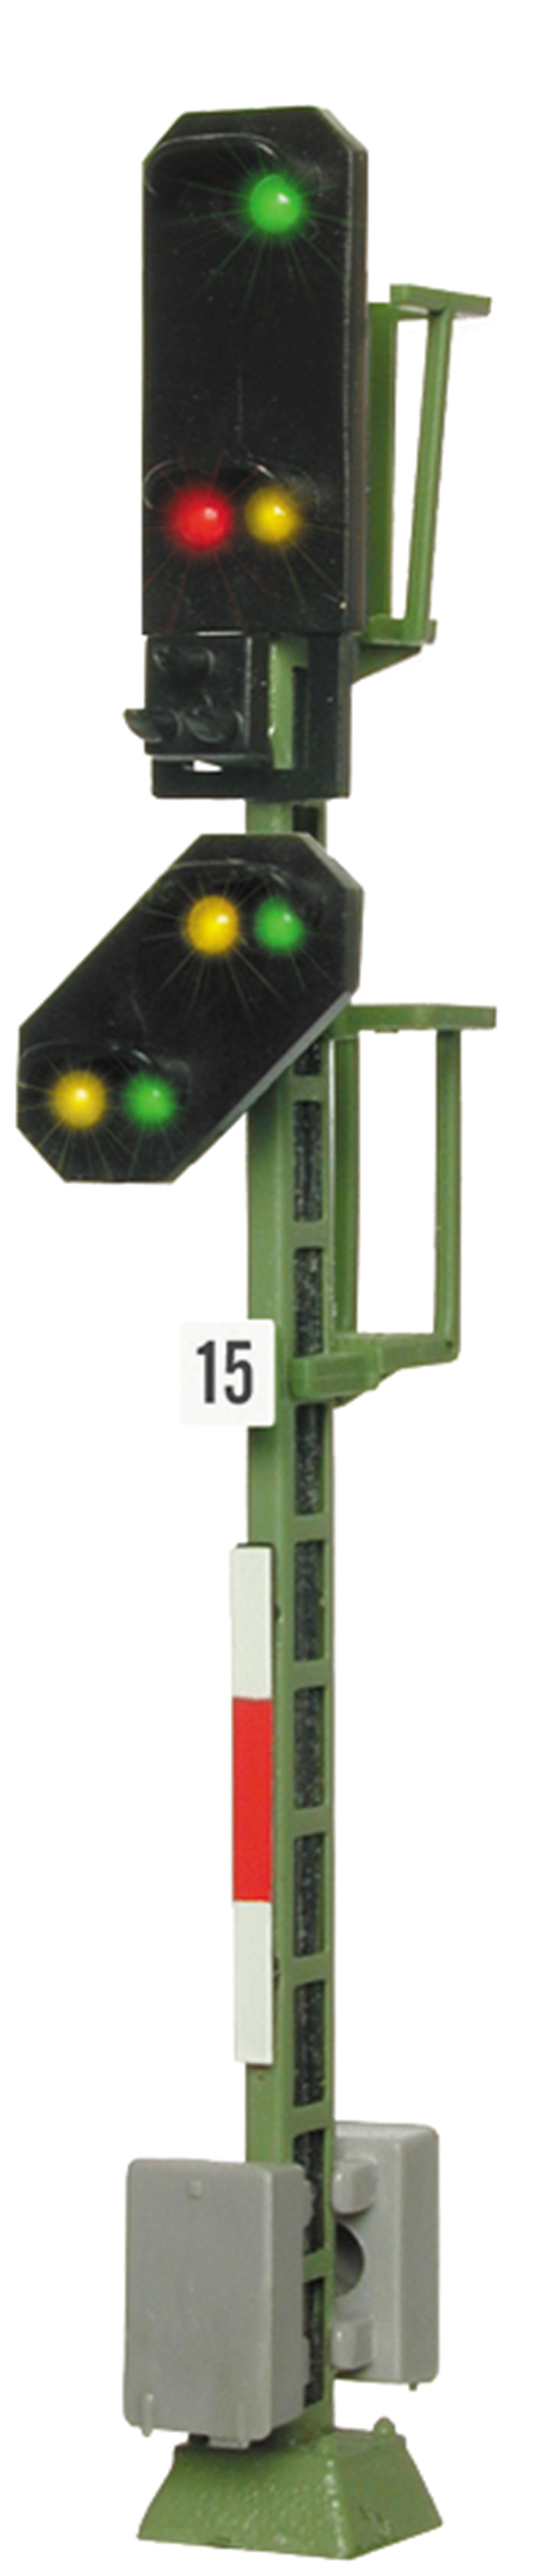 Viessmann 4015 H0 Licht-Einfahrsignal mit Vorsignal 